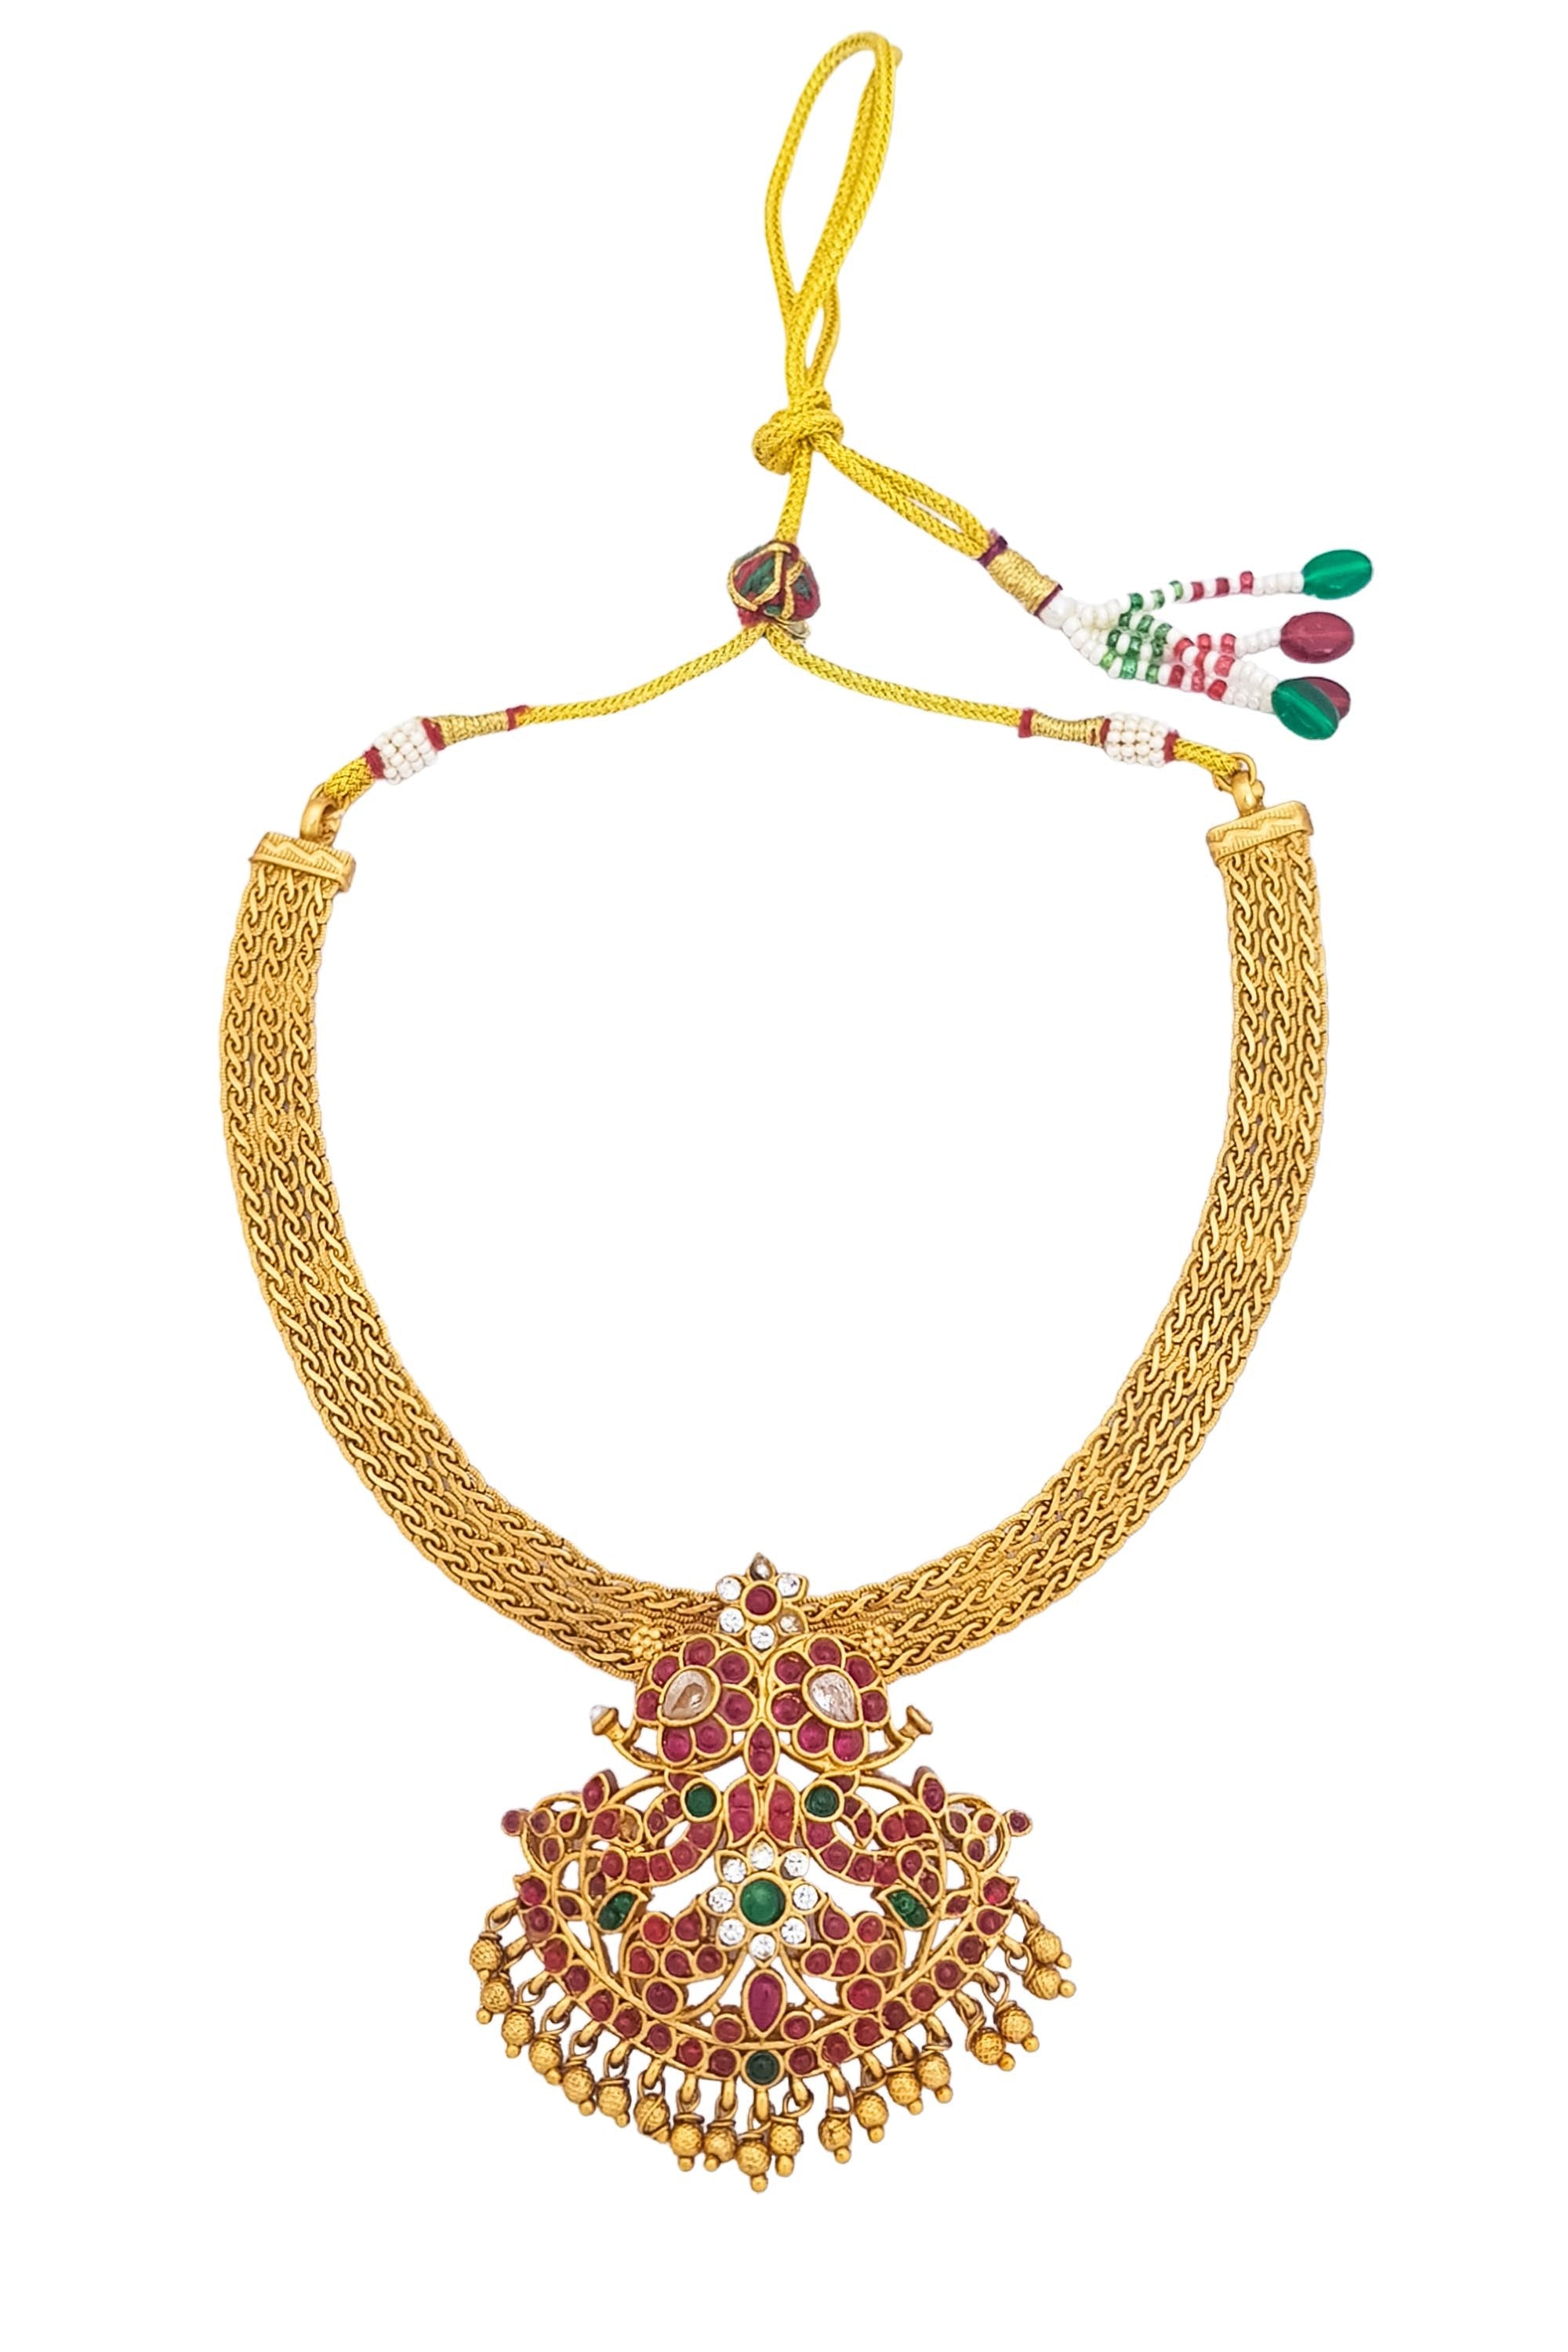 Gold Plated Elegant Necklace Set 18276N